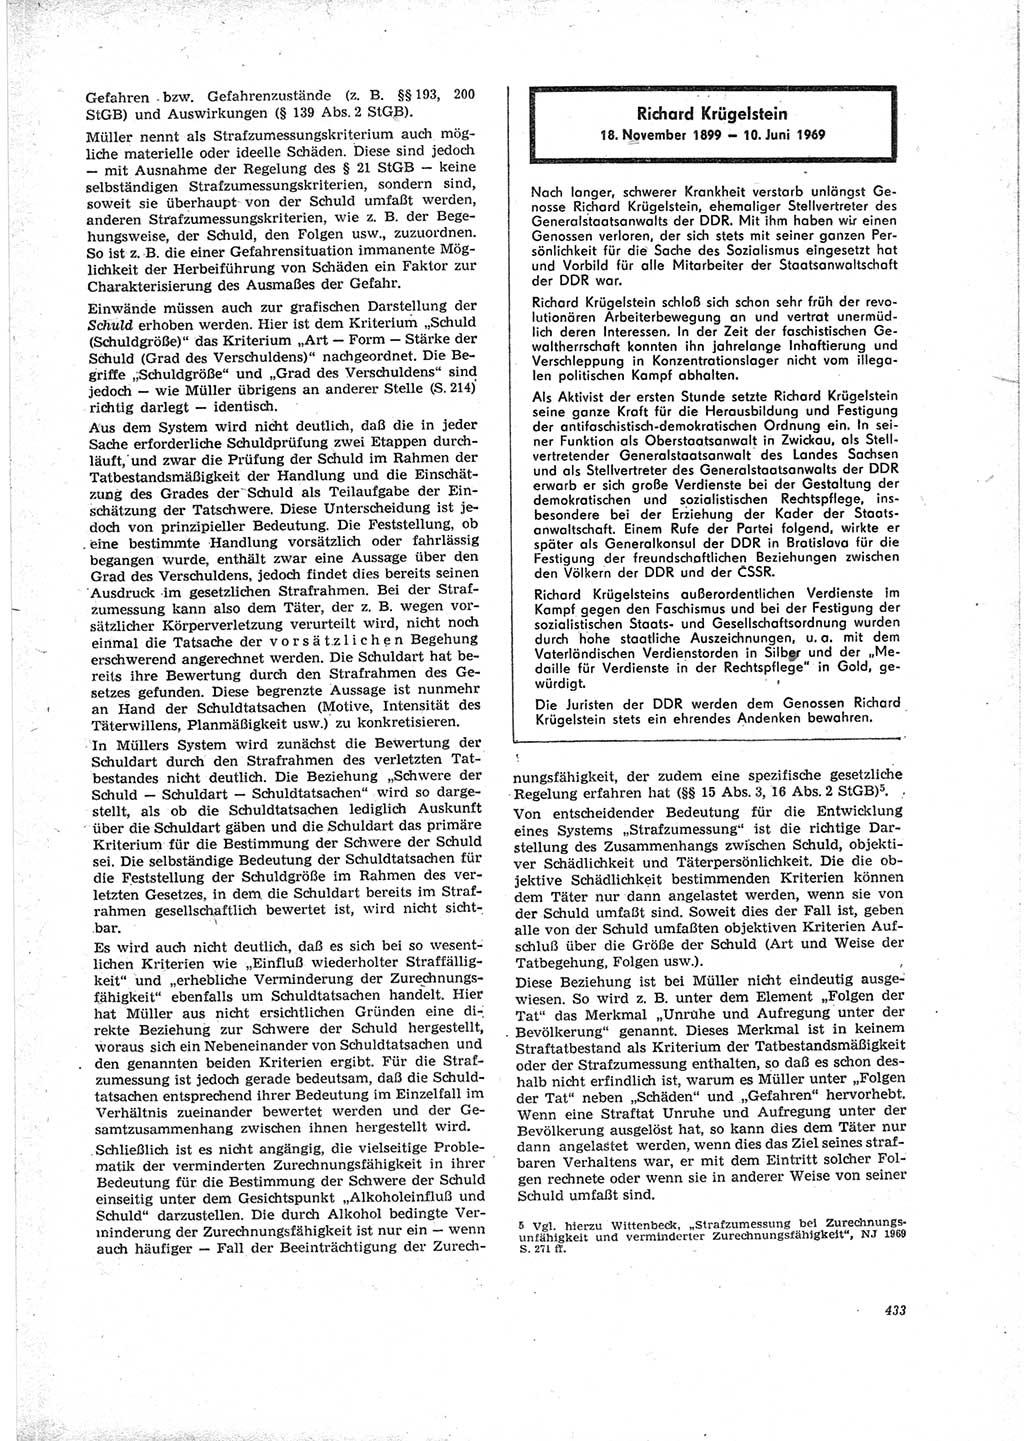 Neue Justiz (NJ), Zeitschrift für Recht und Rechtswissenschaft [Deutsche Demokratische Republik (DDR)], 23. Jahrgang 1969, Seite 433 (NJ DDR 1969, S. 433)